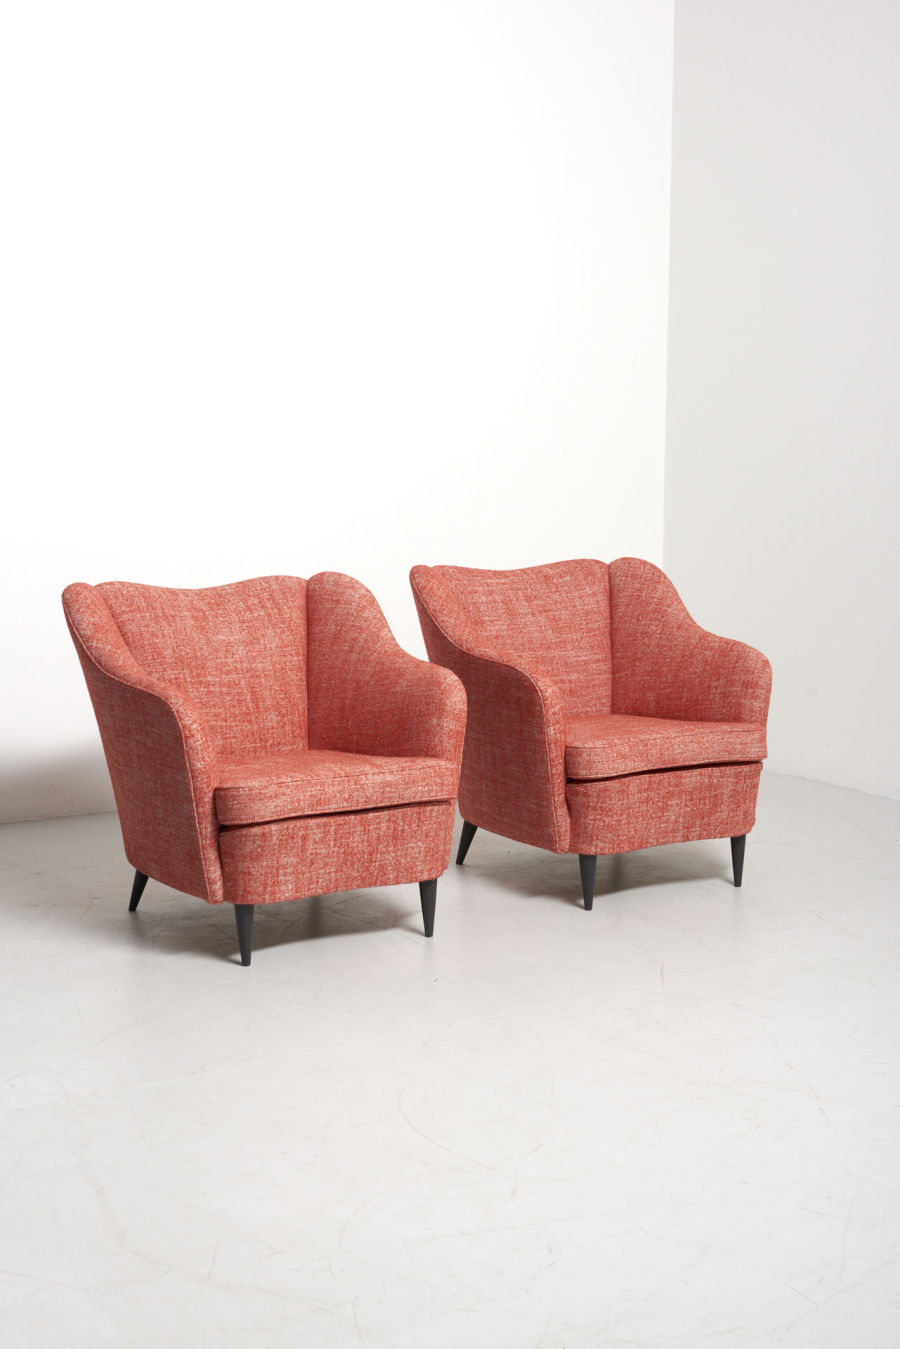 modestfurniture-vintage-2147-pair-easy-chairs-gio-ponti-casa-e-giardino01